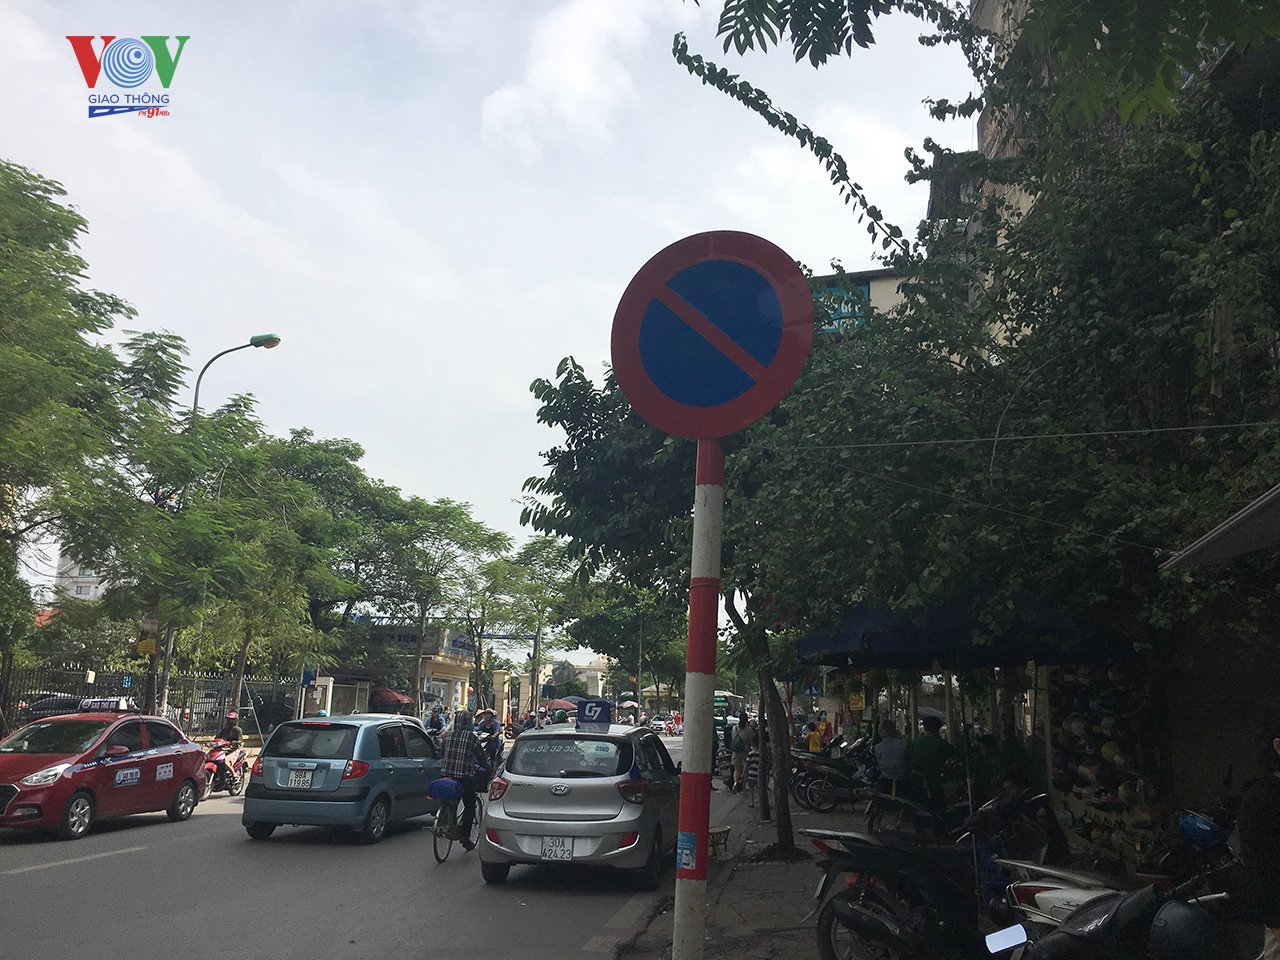 Trên phố Tôn Thất Tùng đoạn qua trường Đại học Y thường xuyên có nhiều ô tô dừng đỗ 2 bên đường, nhiều nhất là các xe taxi, khiến cho các phương tiện di chuyển khó khăn theo cả 2 hướng